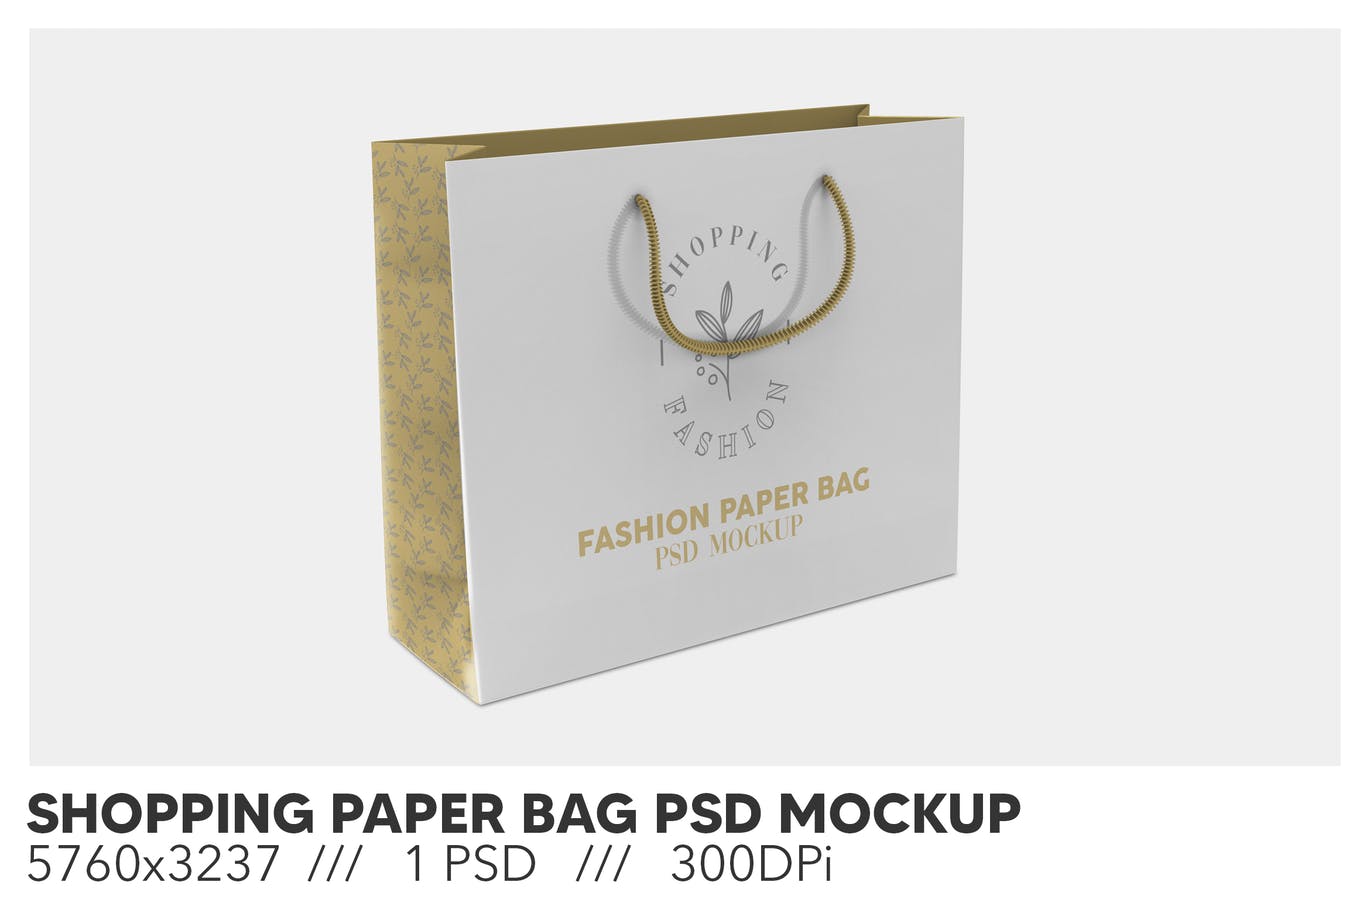 购物纸袋/礼品袋品牌设计样机 (PSD)